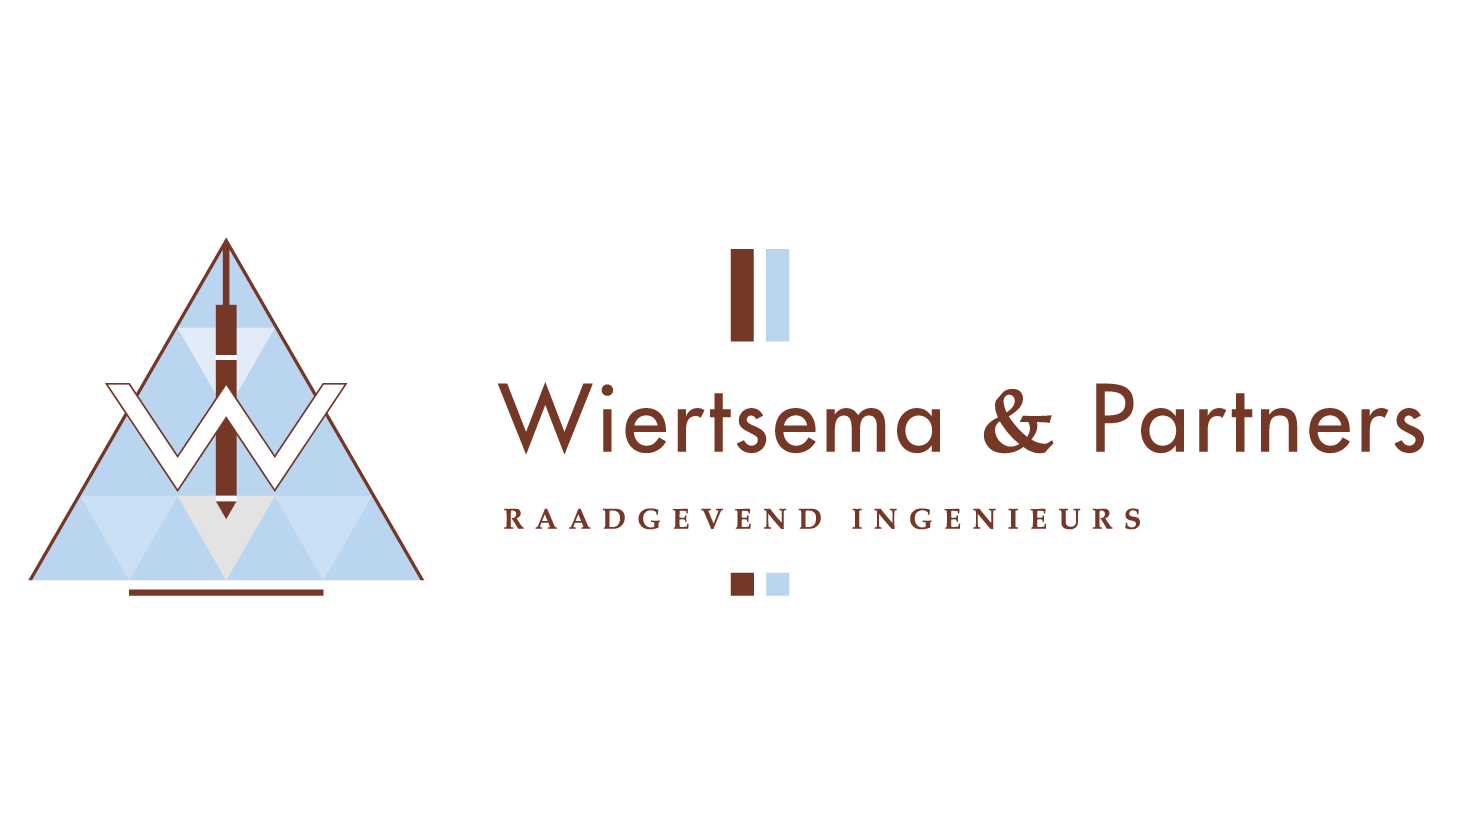 Wiertsema & Partners